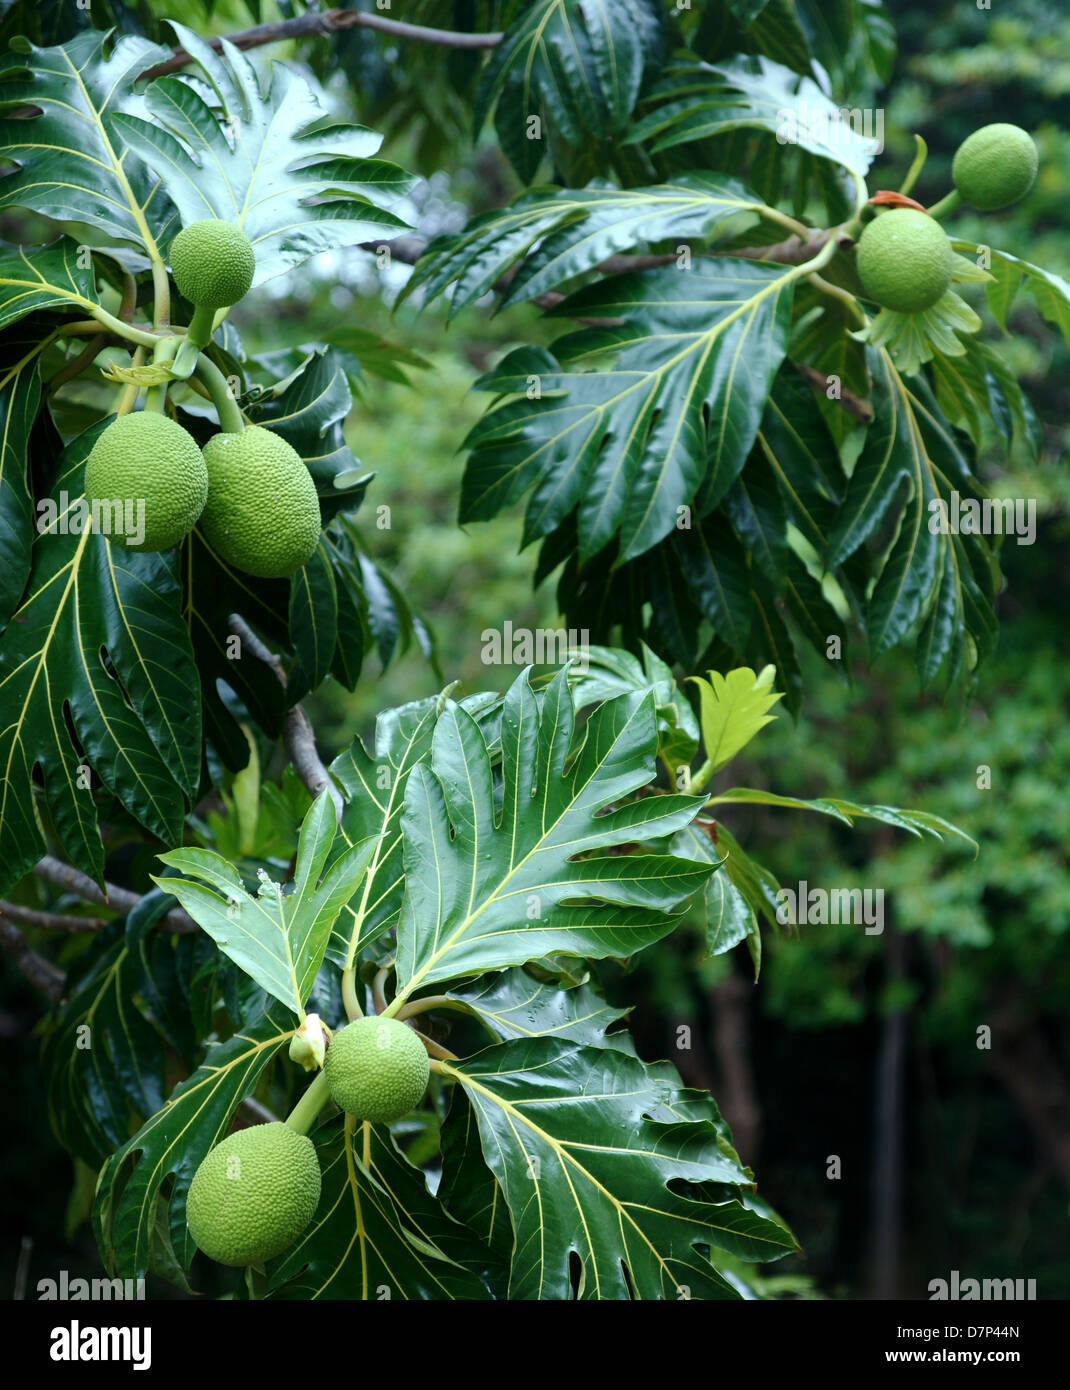 Fruta de pan (Artocarpus altilis) árbol en el bosque tropical. Puerto Rico.  América Central Fotografía de stock - Alamy